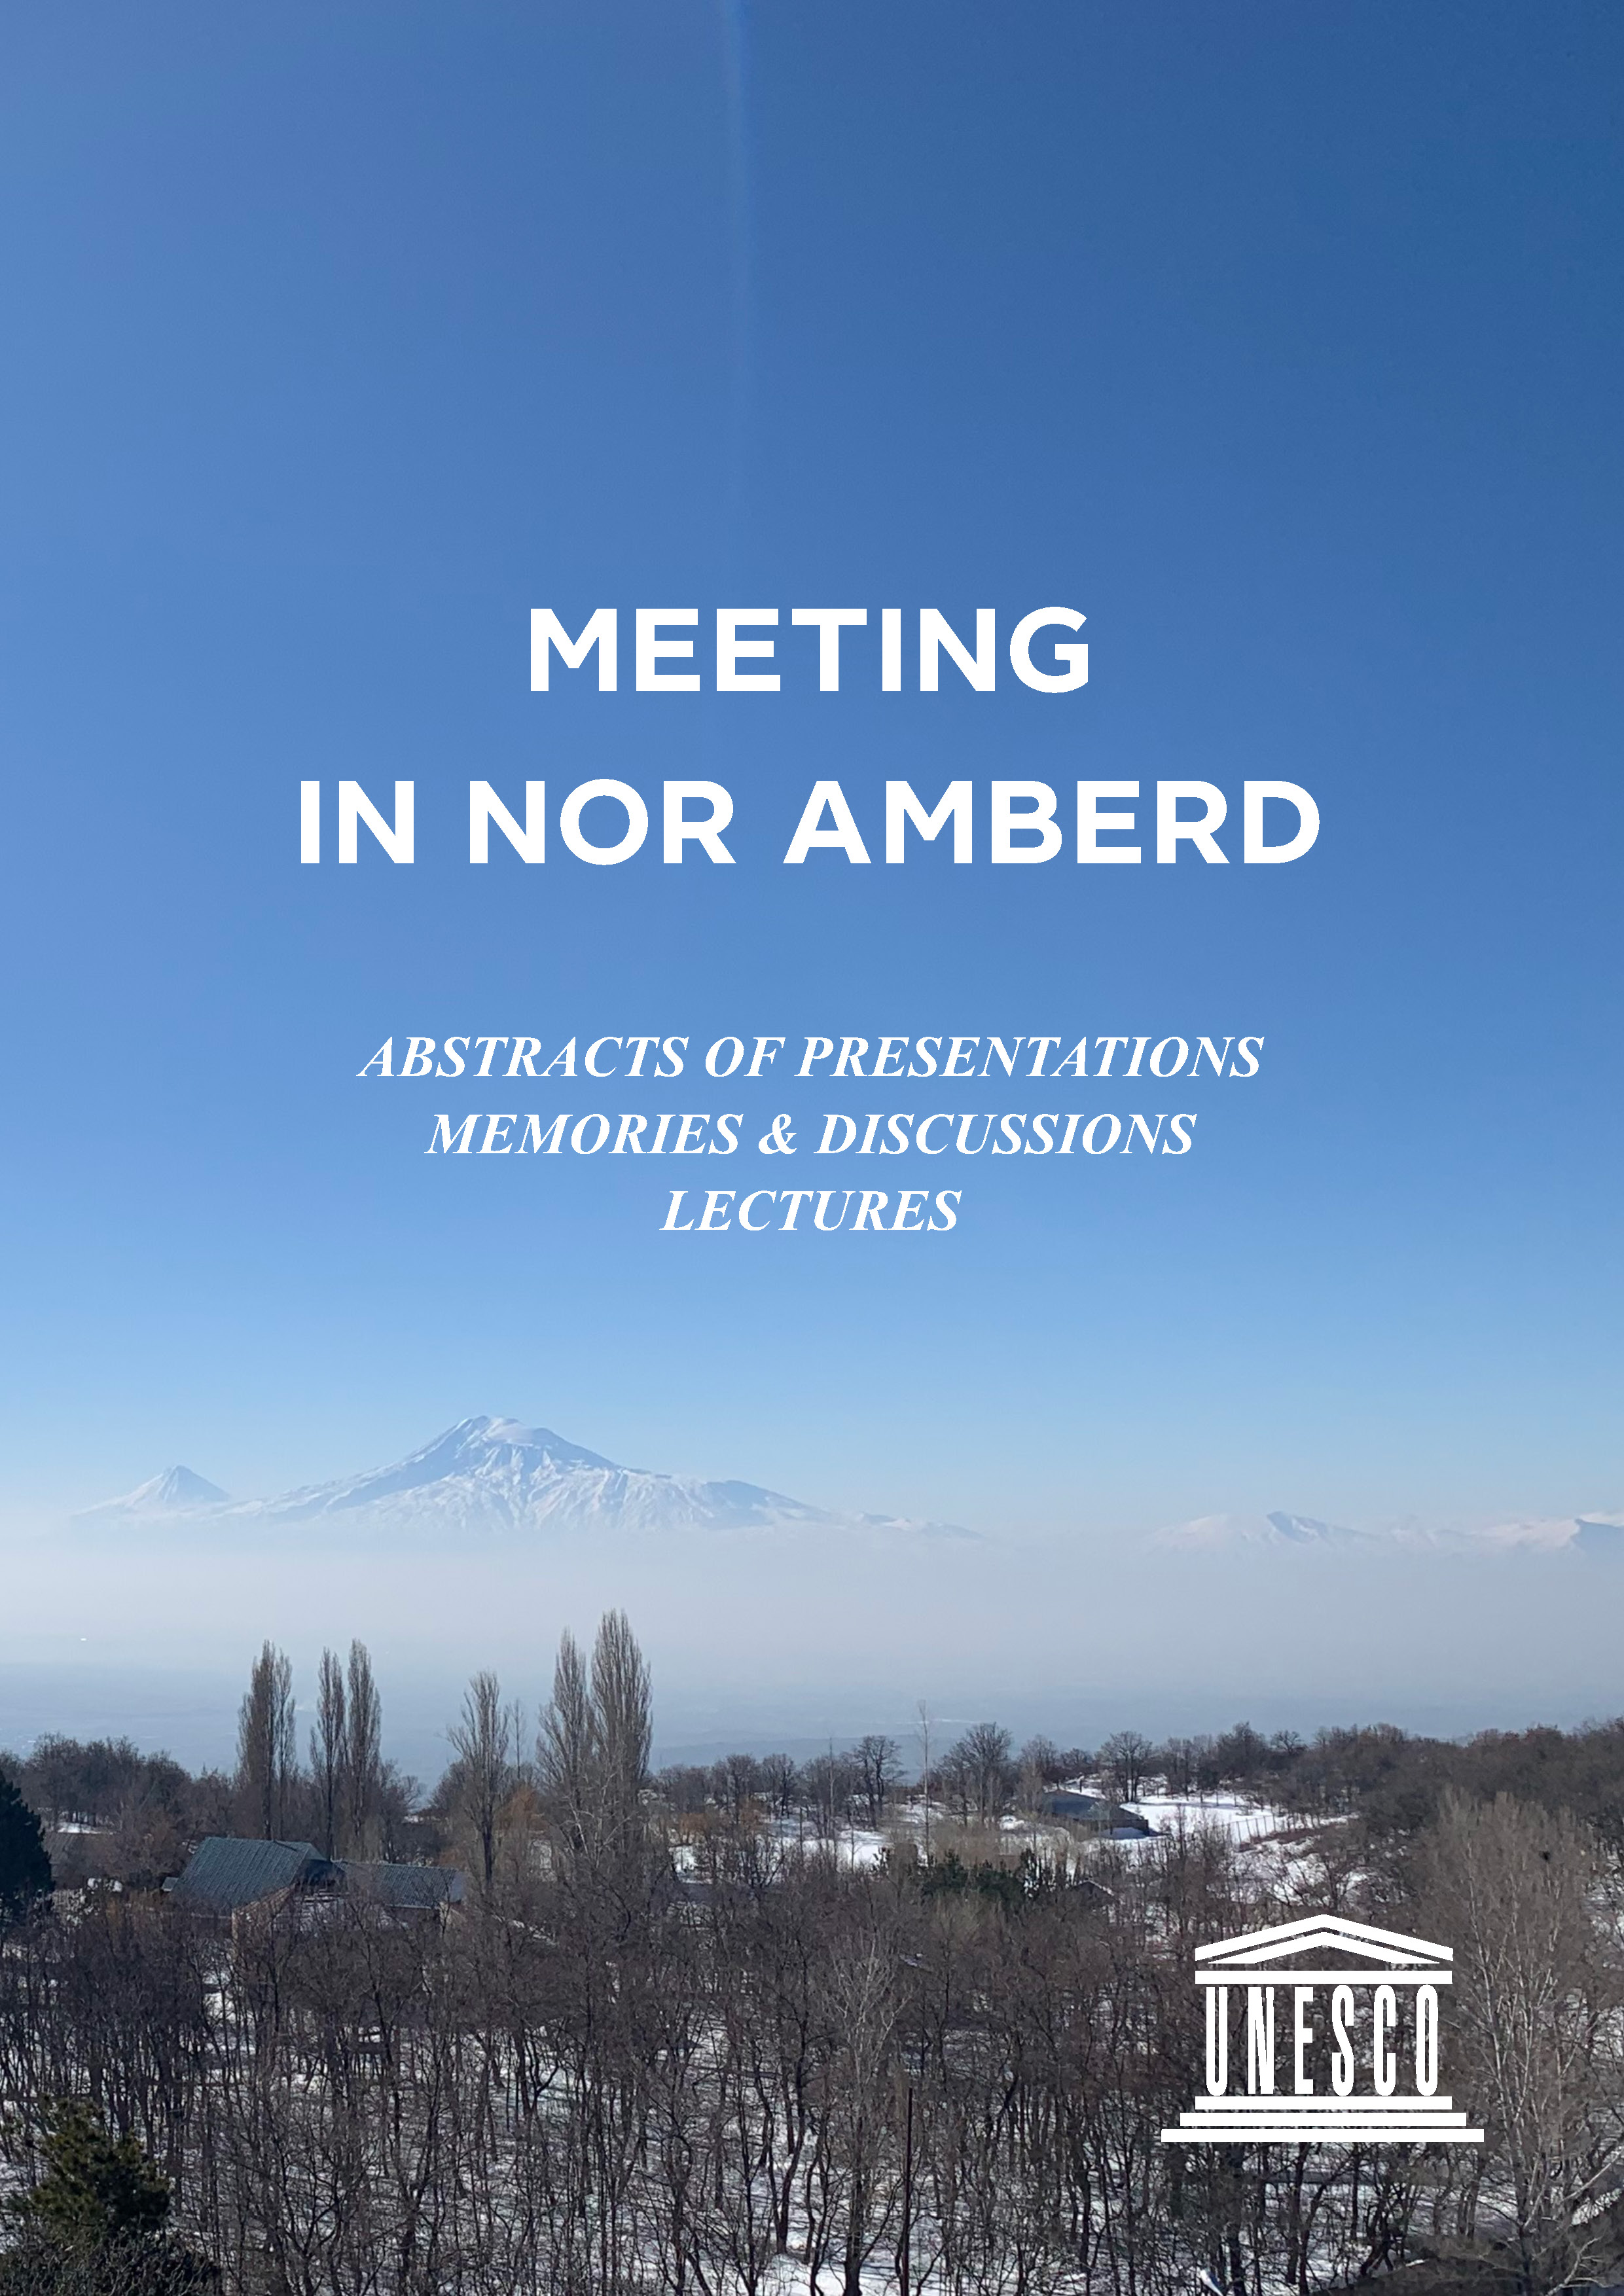 MEETING IN NOR AMBERD